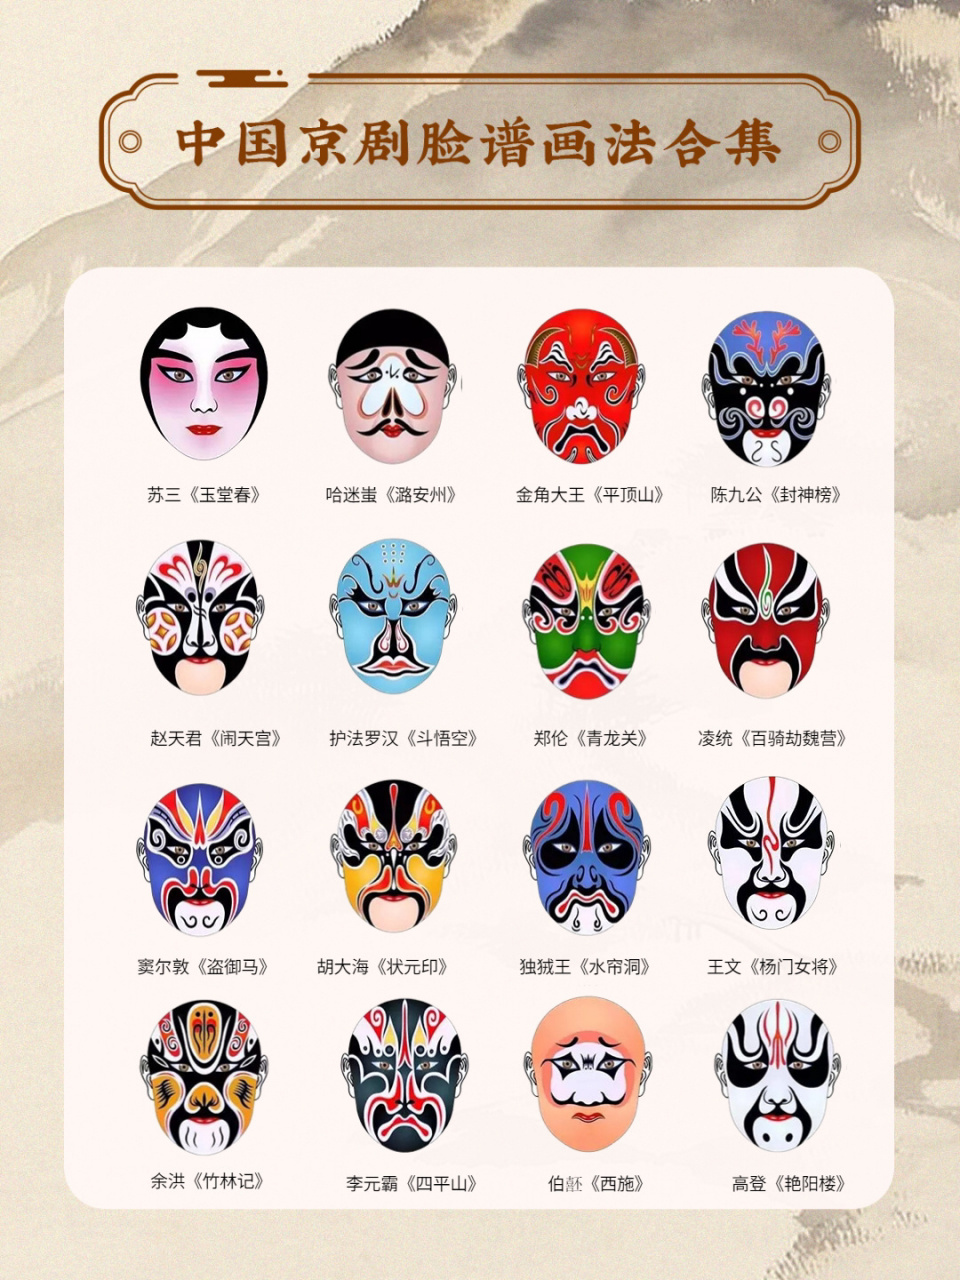 在中国古典戏曲里,人们用不同的颜色,在人物的脸上勾画出特定的